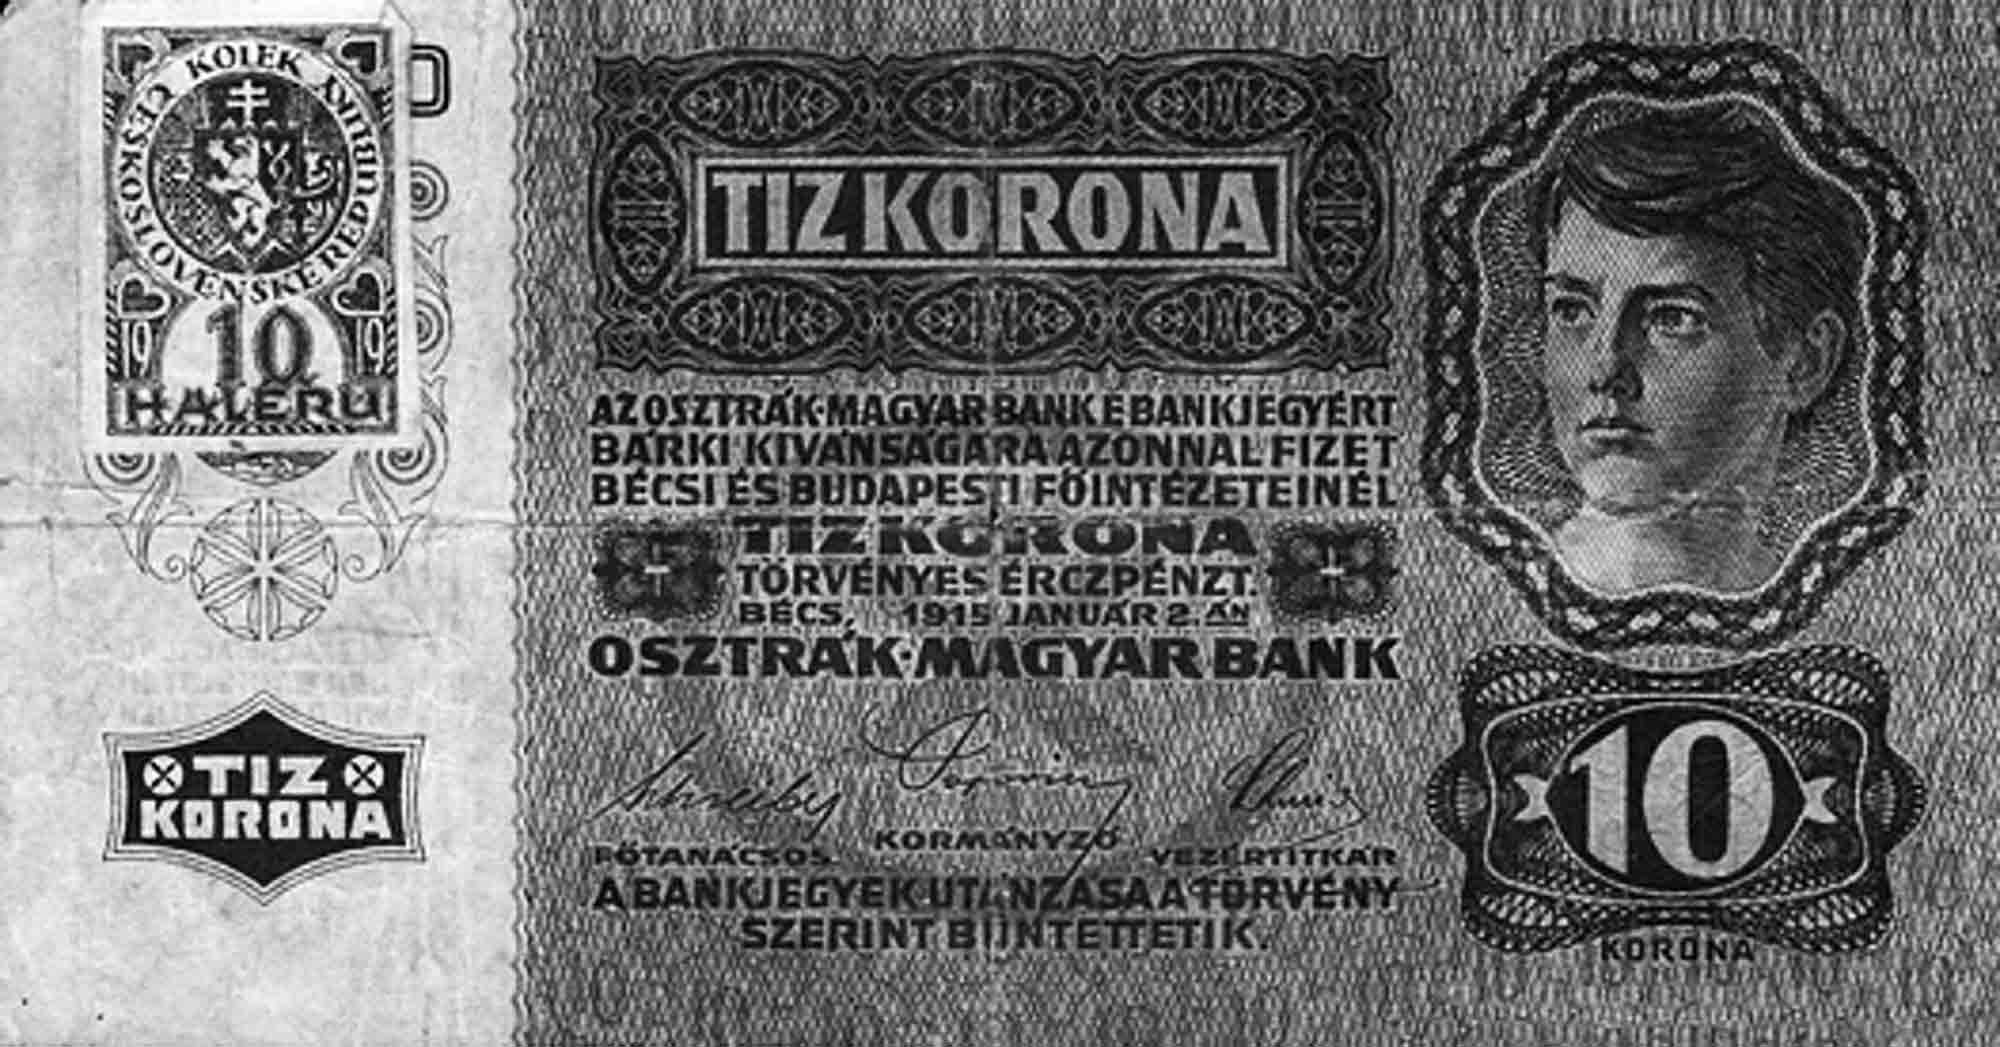 Neokolkované bankovky nejsou od 10. března 1919 zákonným platidlem.